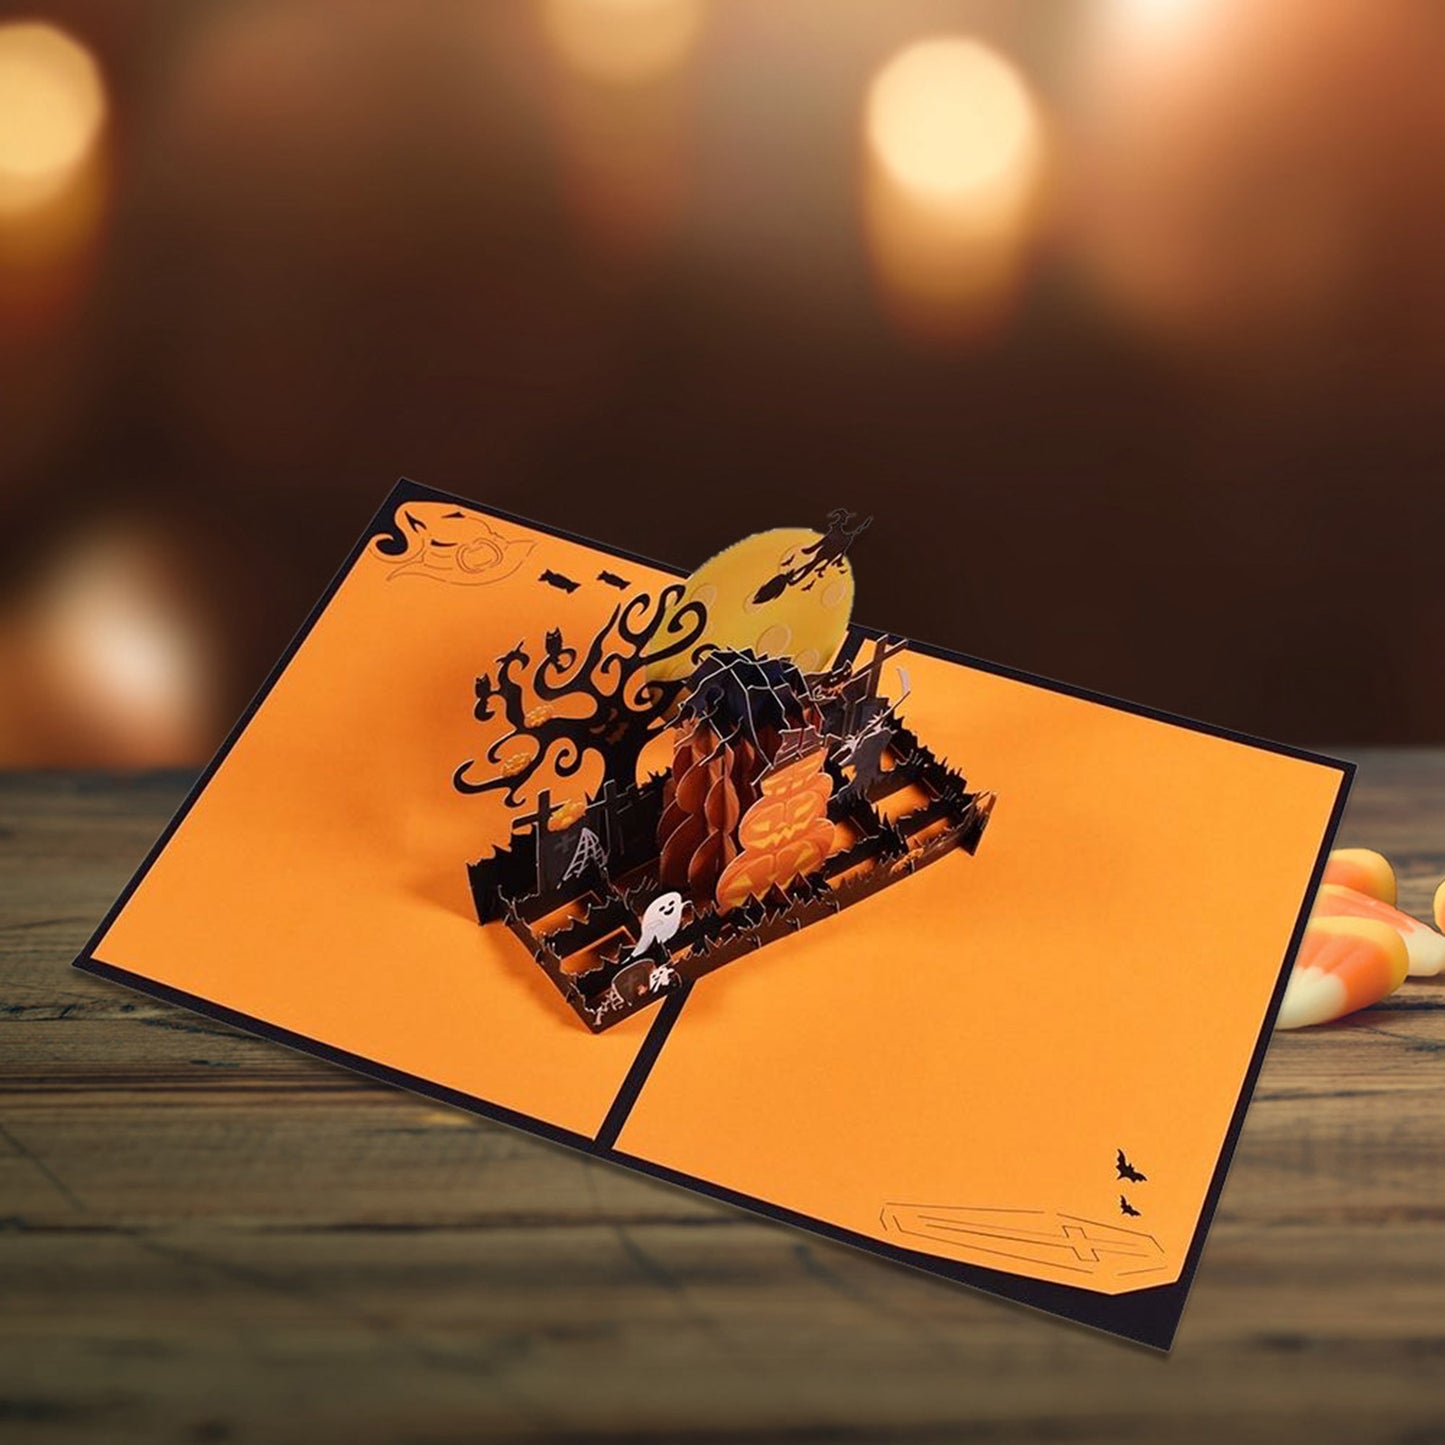 3D Pop-up Halloween Card Funny Pumpkin Wizard Castle Postcard